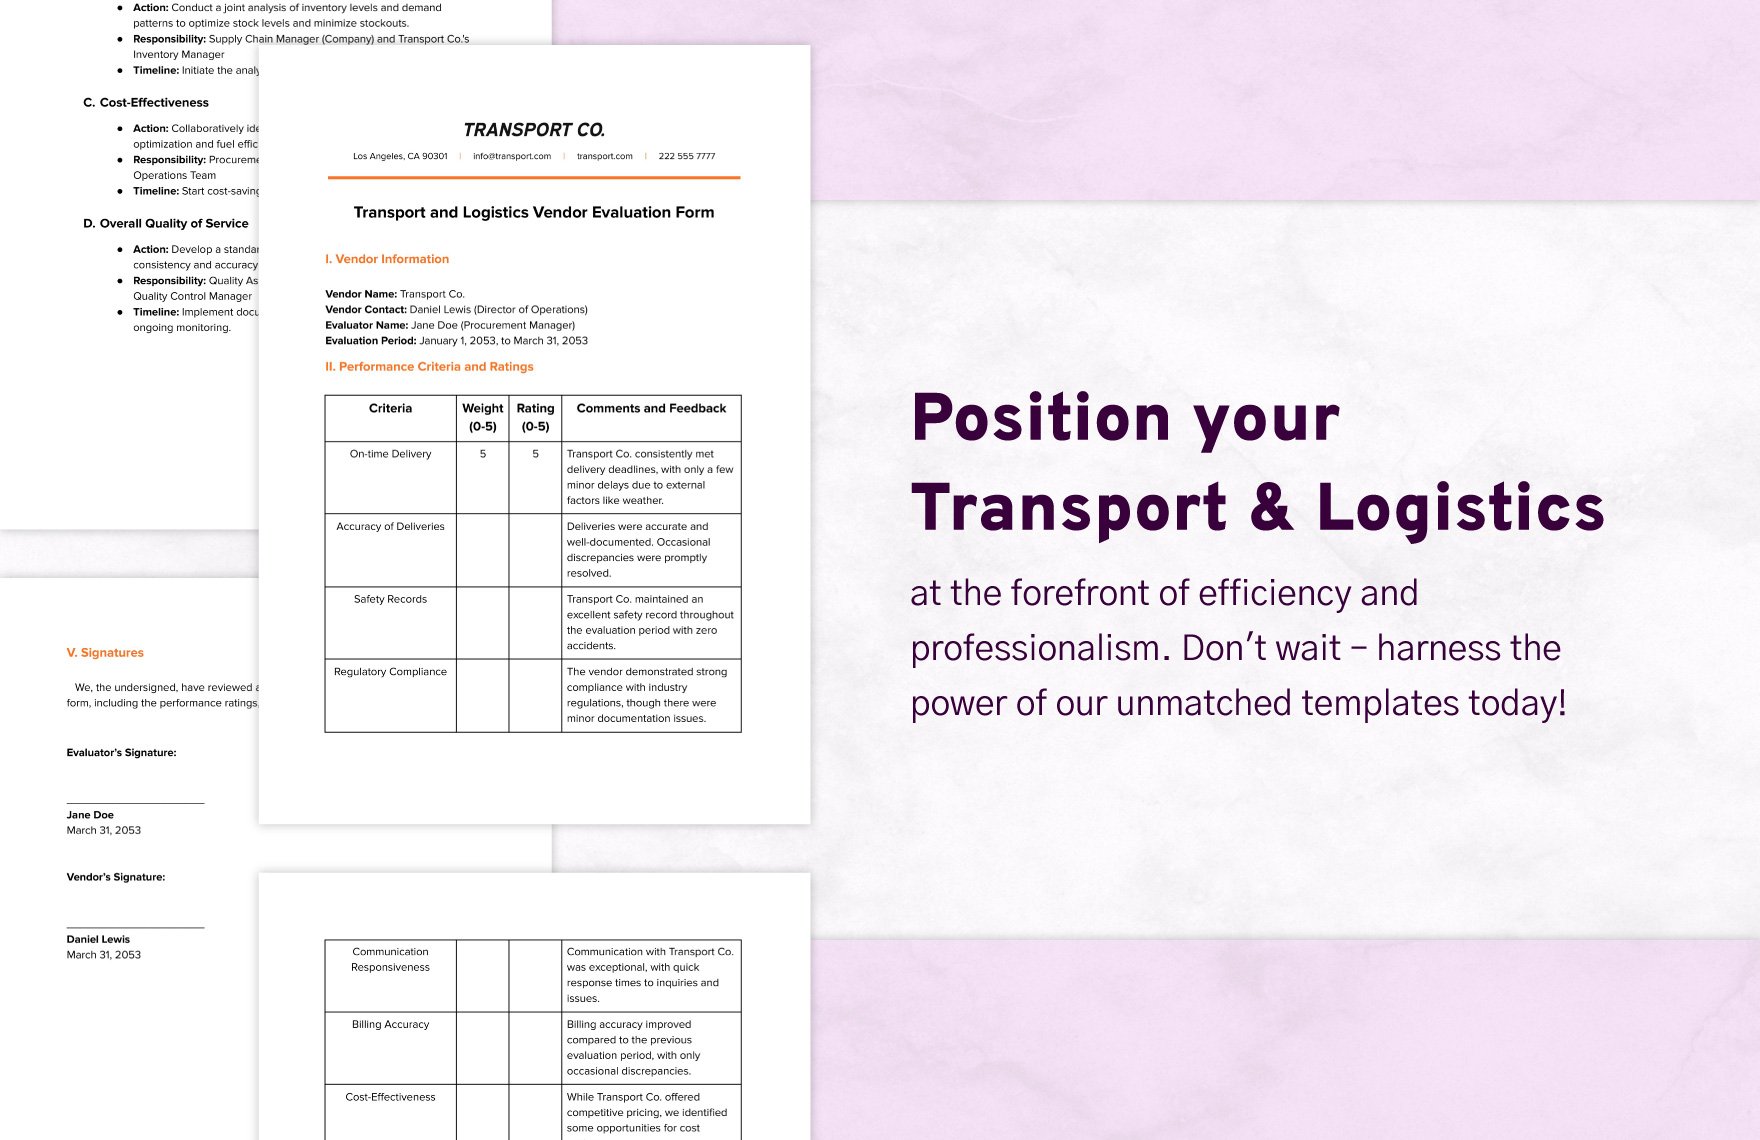 Transport and Logistics Vendor Evaluation Form Template